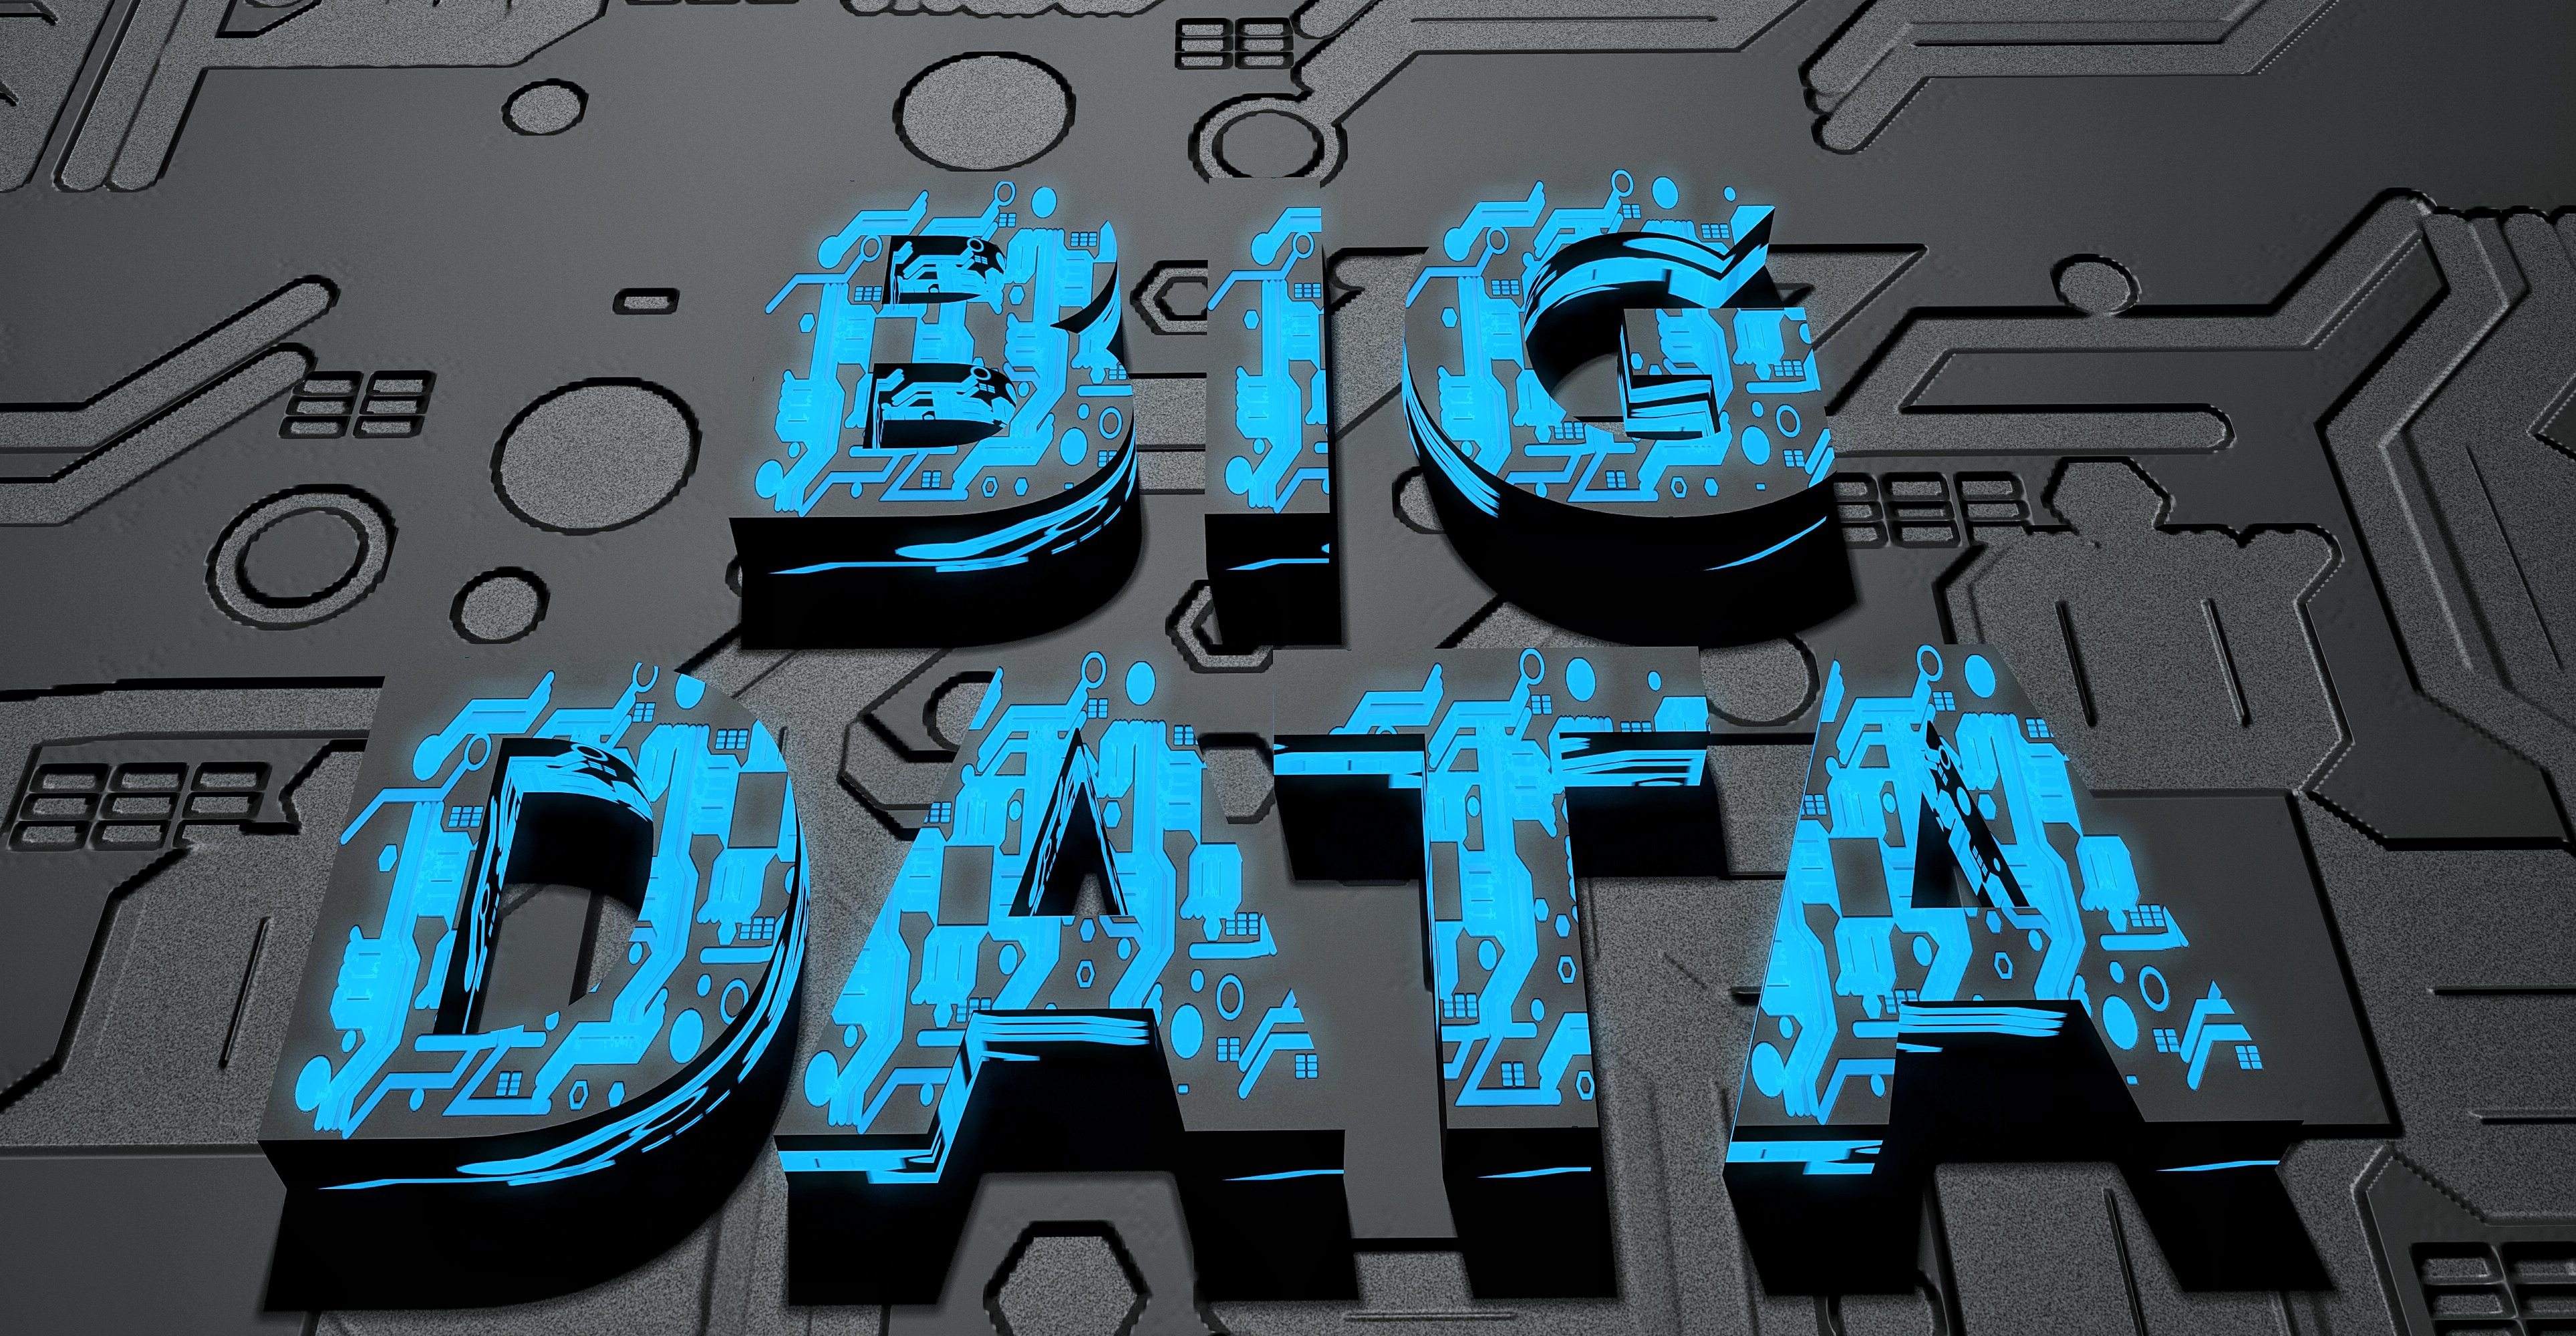 big data là gì